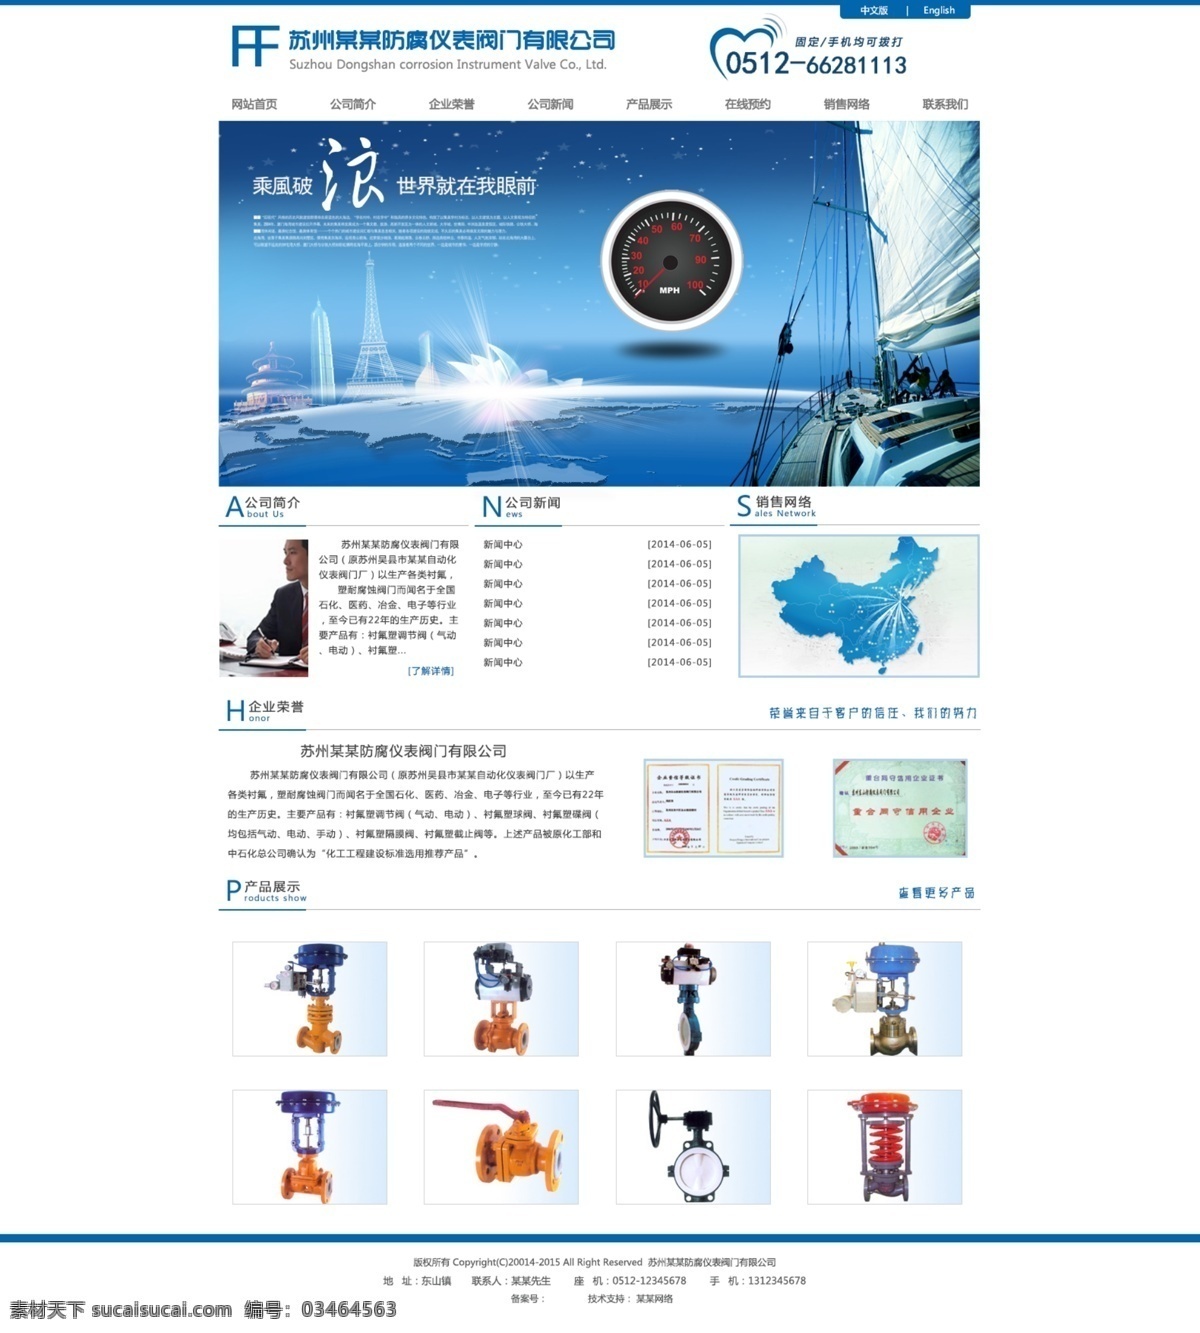 防腐 网页 设计图 网站 中文模板 网站设计图 网页设计图 web 界面设计 网页素材 其他网页素材